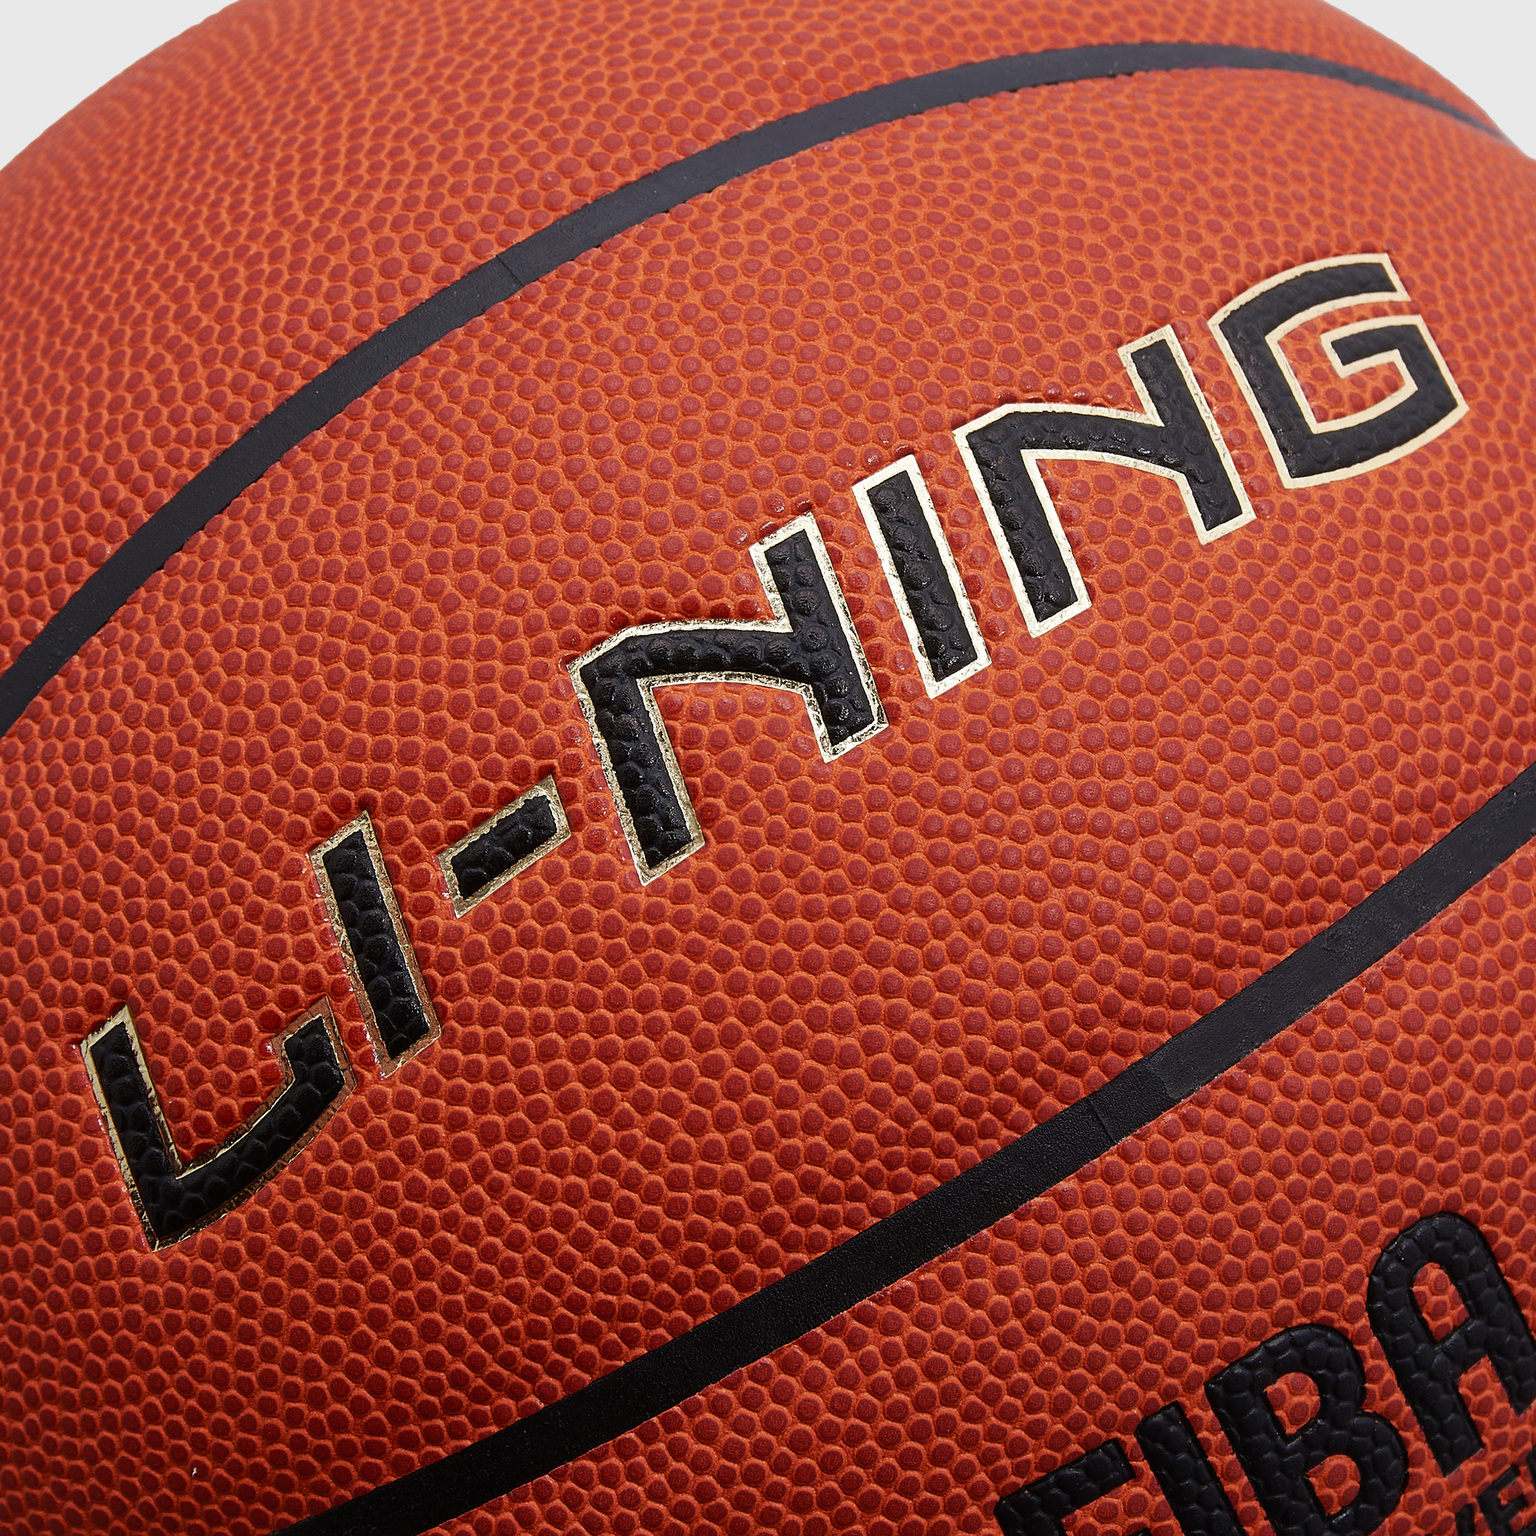 Баскетбольный мяч Li-Ning Fiba ABQT003-1